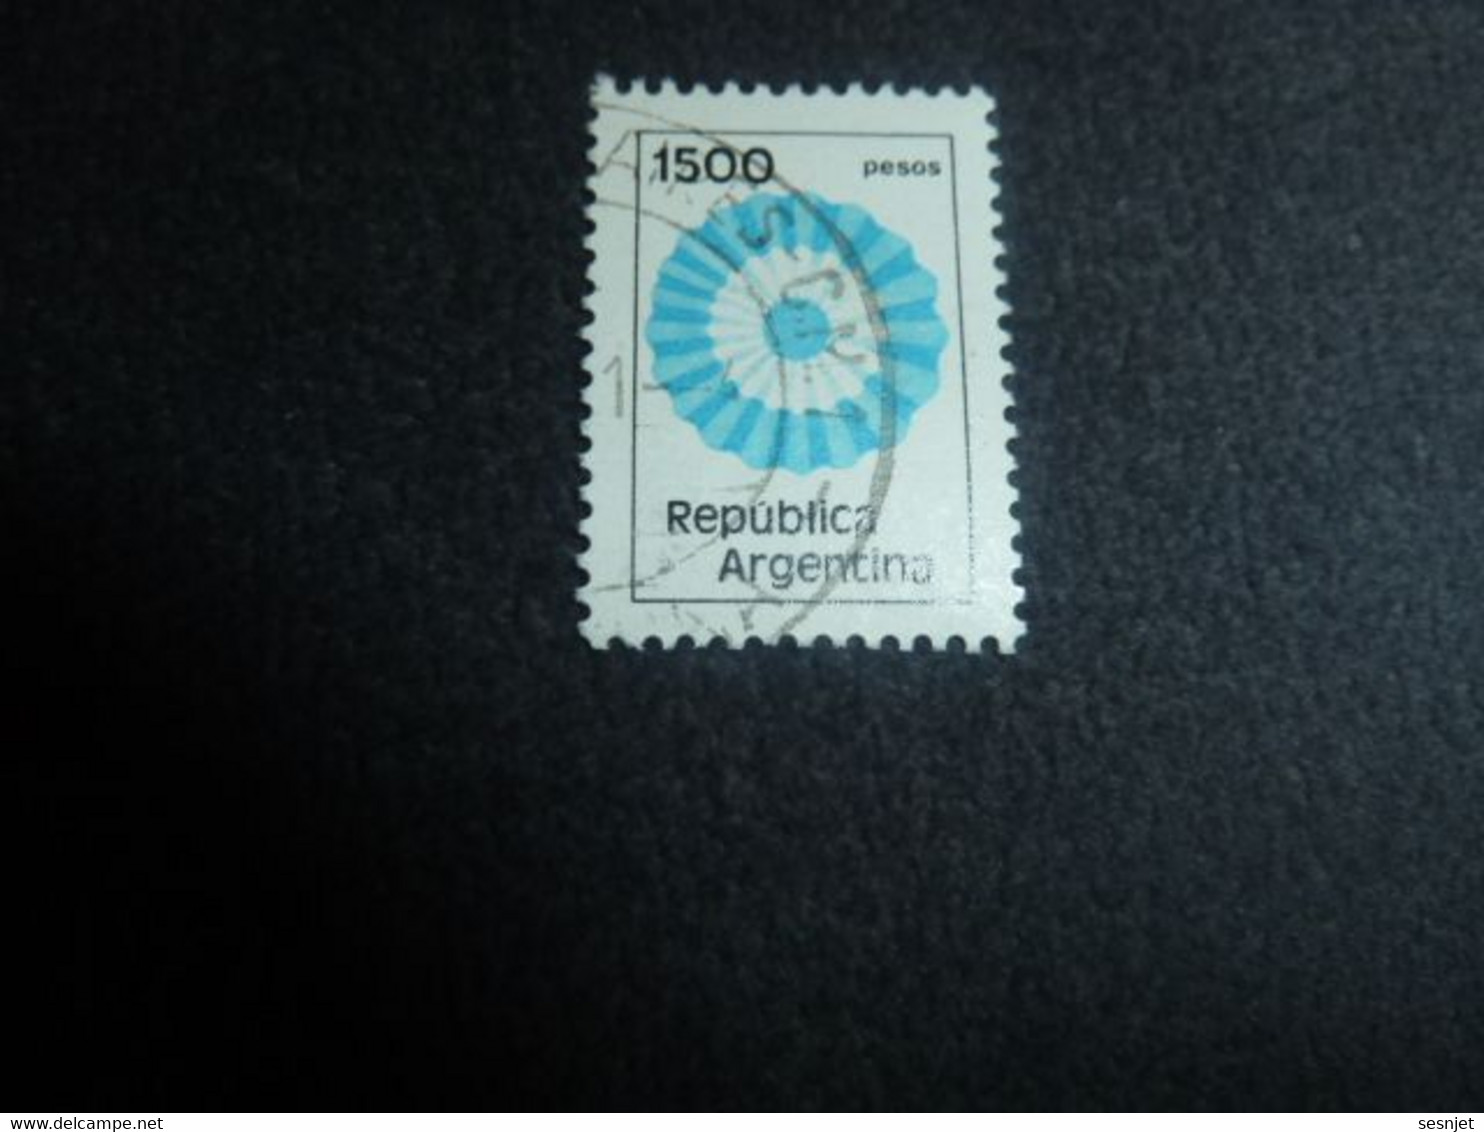 Republica Argentina - Rosace - 1500 Pesos - Yt 1280 - 1288 - Multicolore - Oblitéré - Année 1981 - - Used Stamps